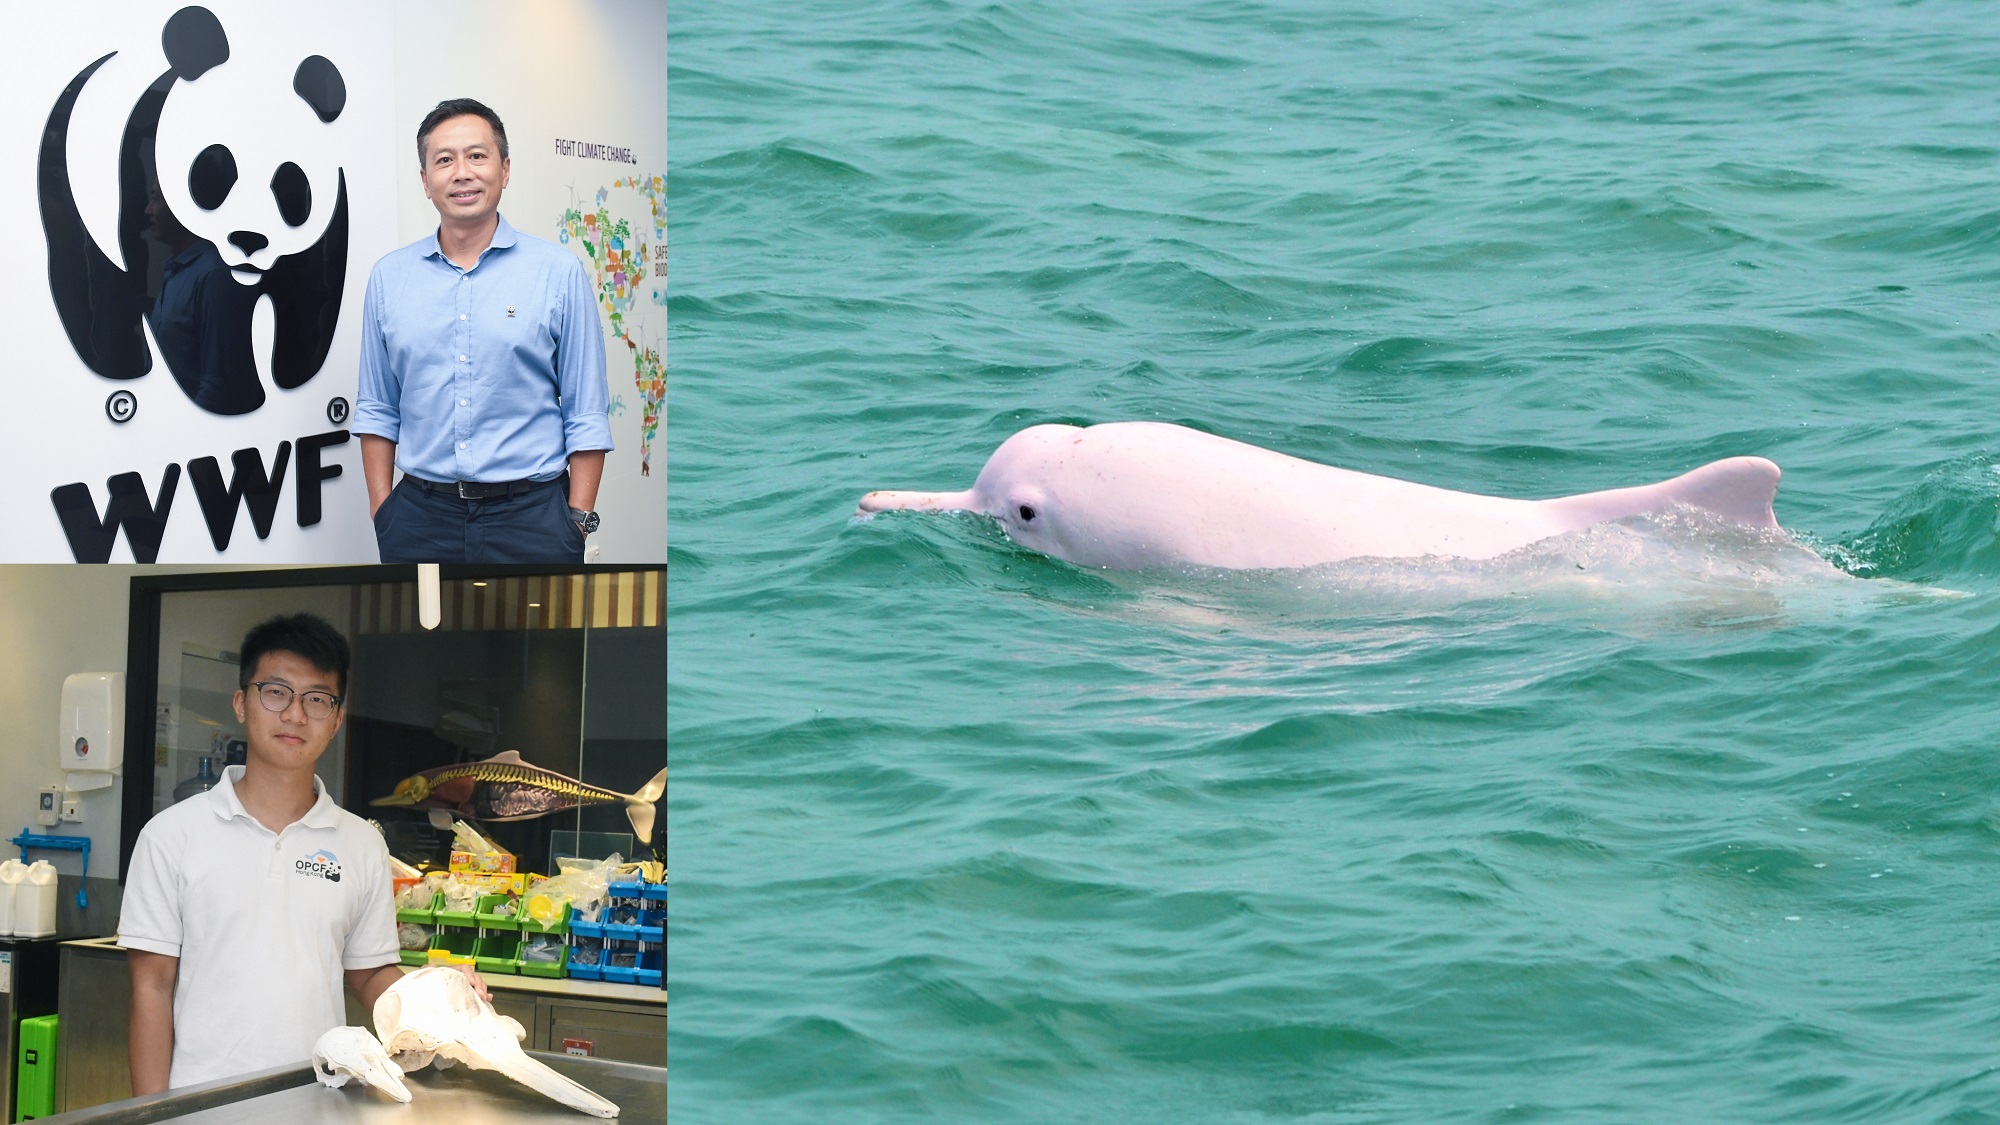 【海洋保育】拯救白海豚 刻不容緩